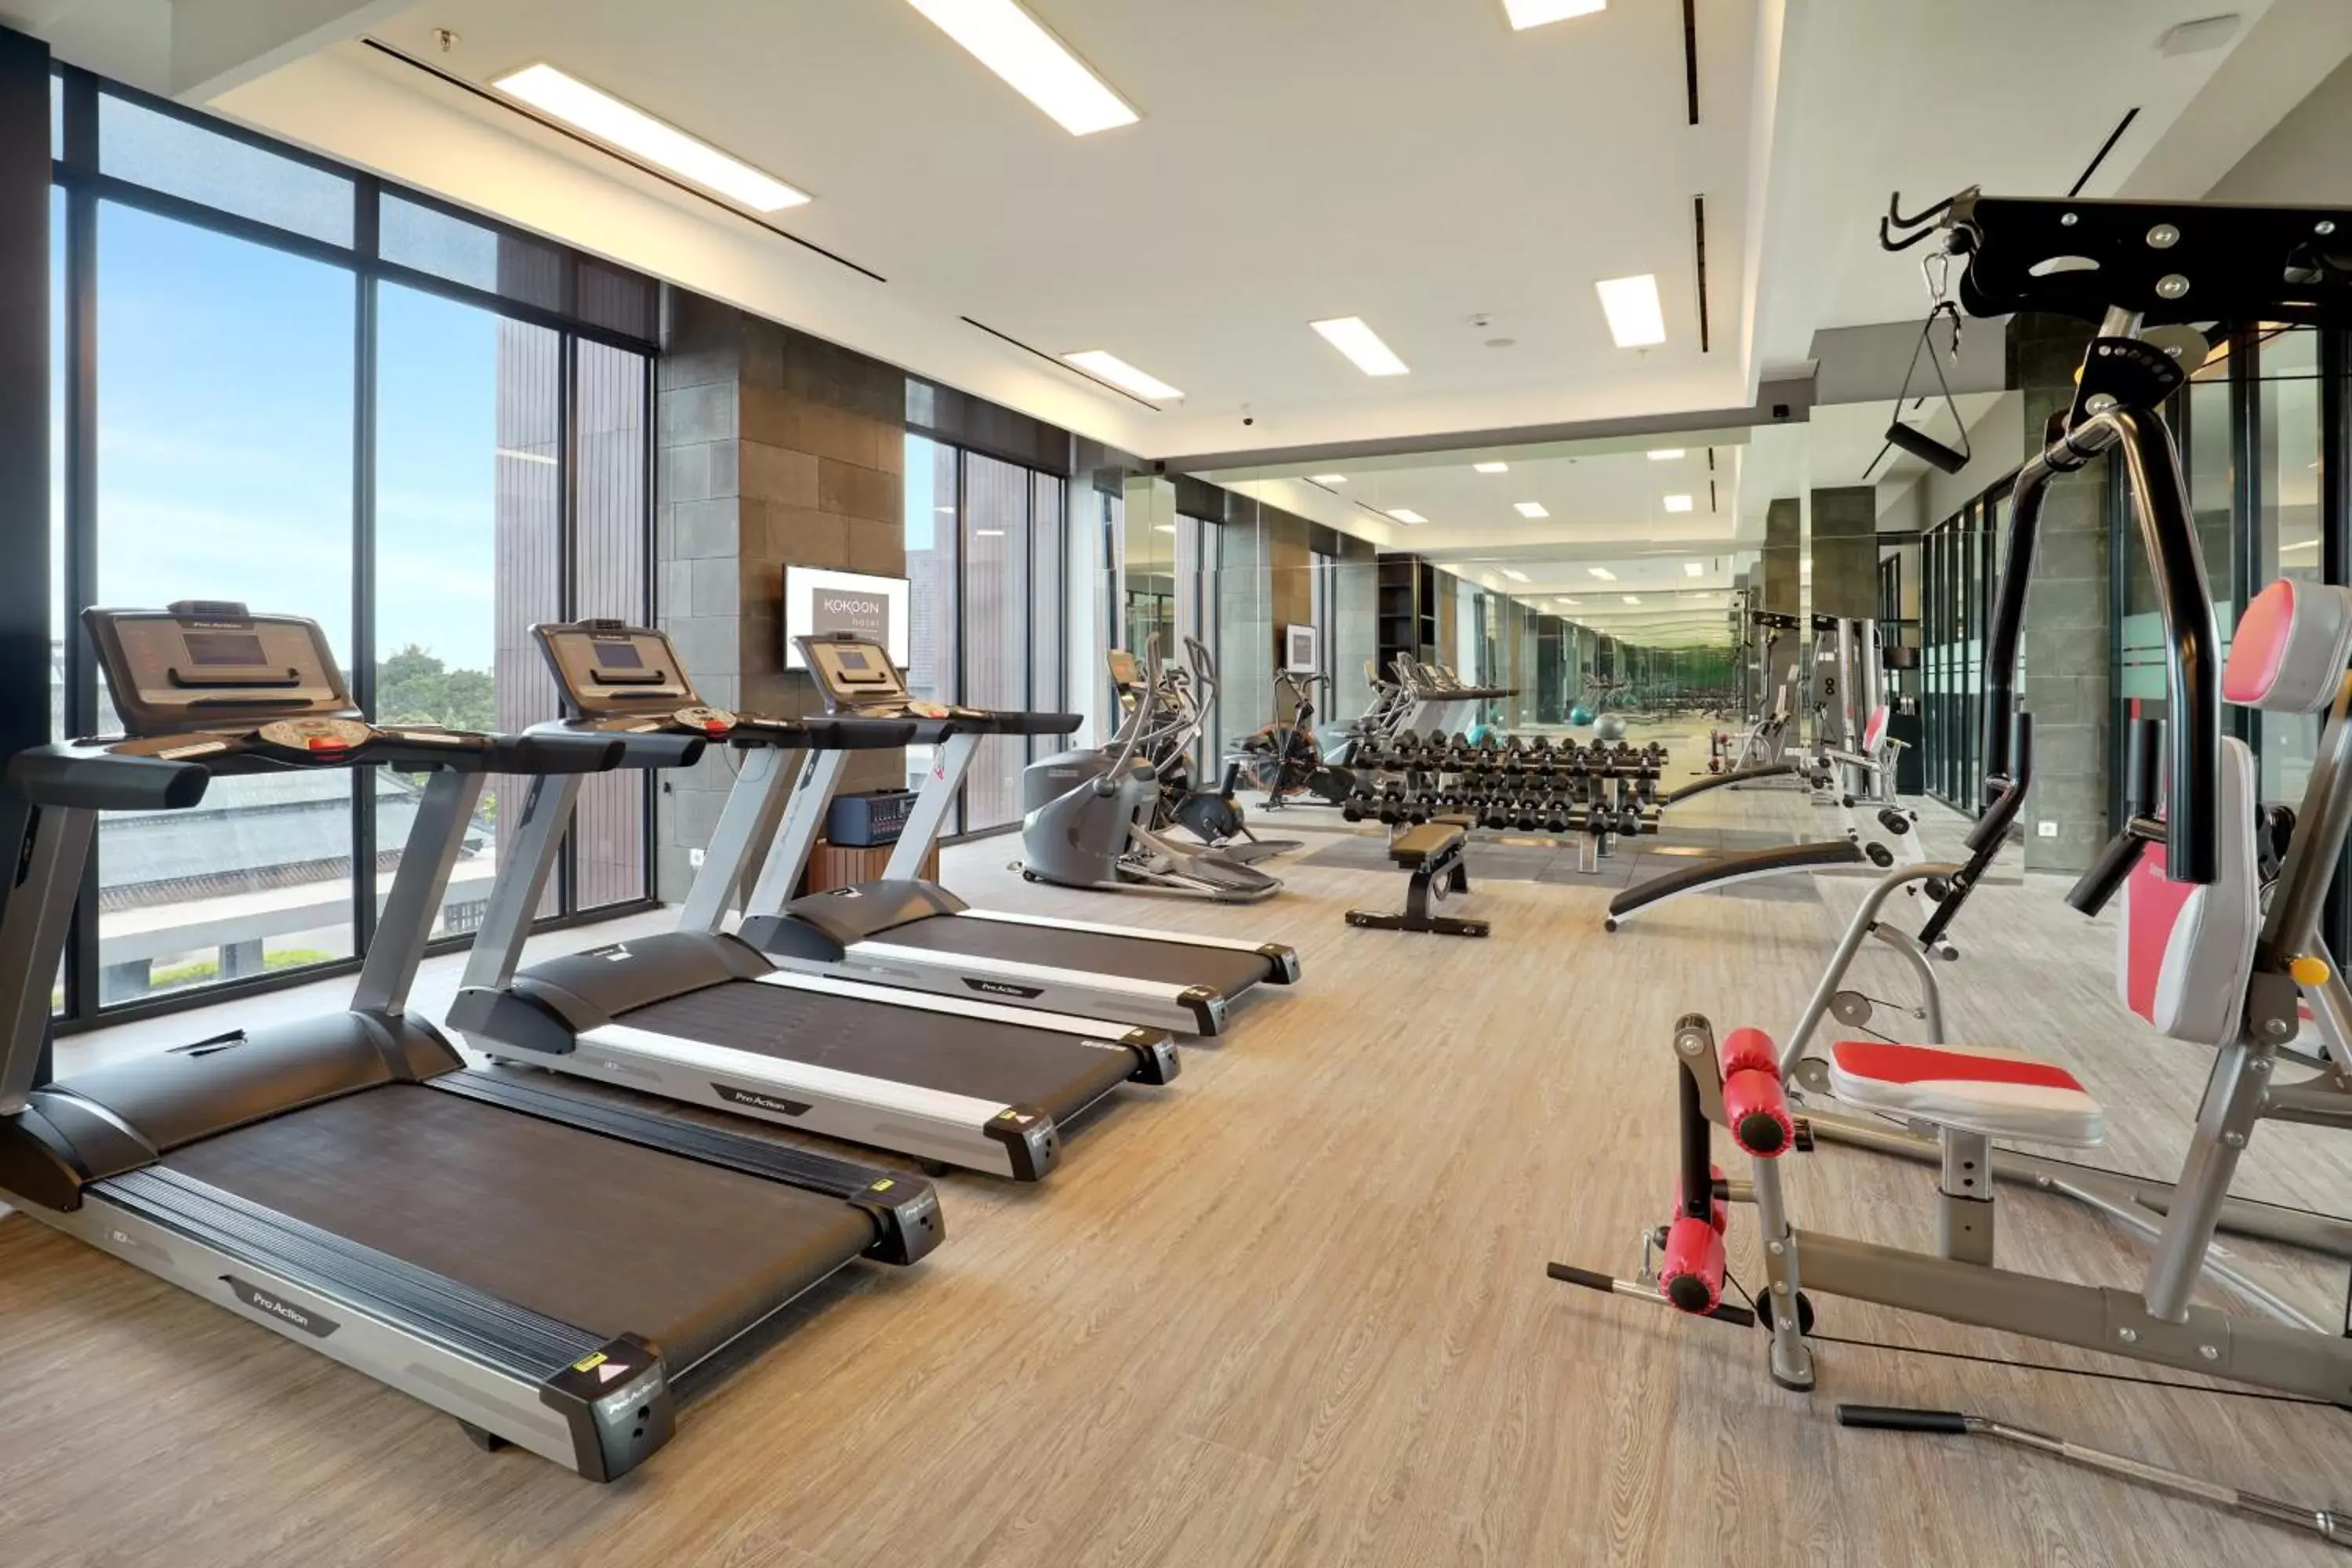 Fitness centre/facilities, Fitness Center/Facilities in Kokoon Hotel Banyuwangi